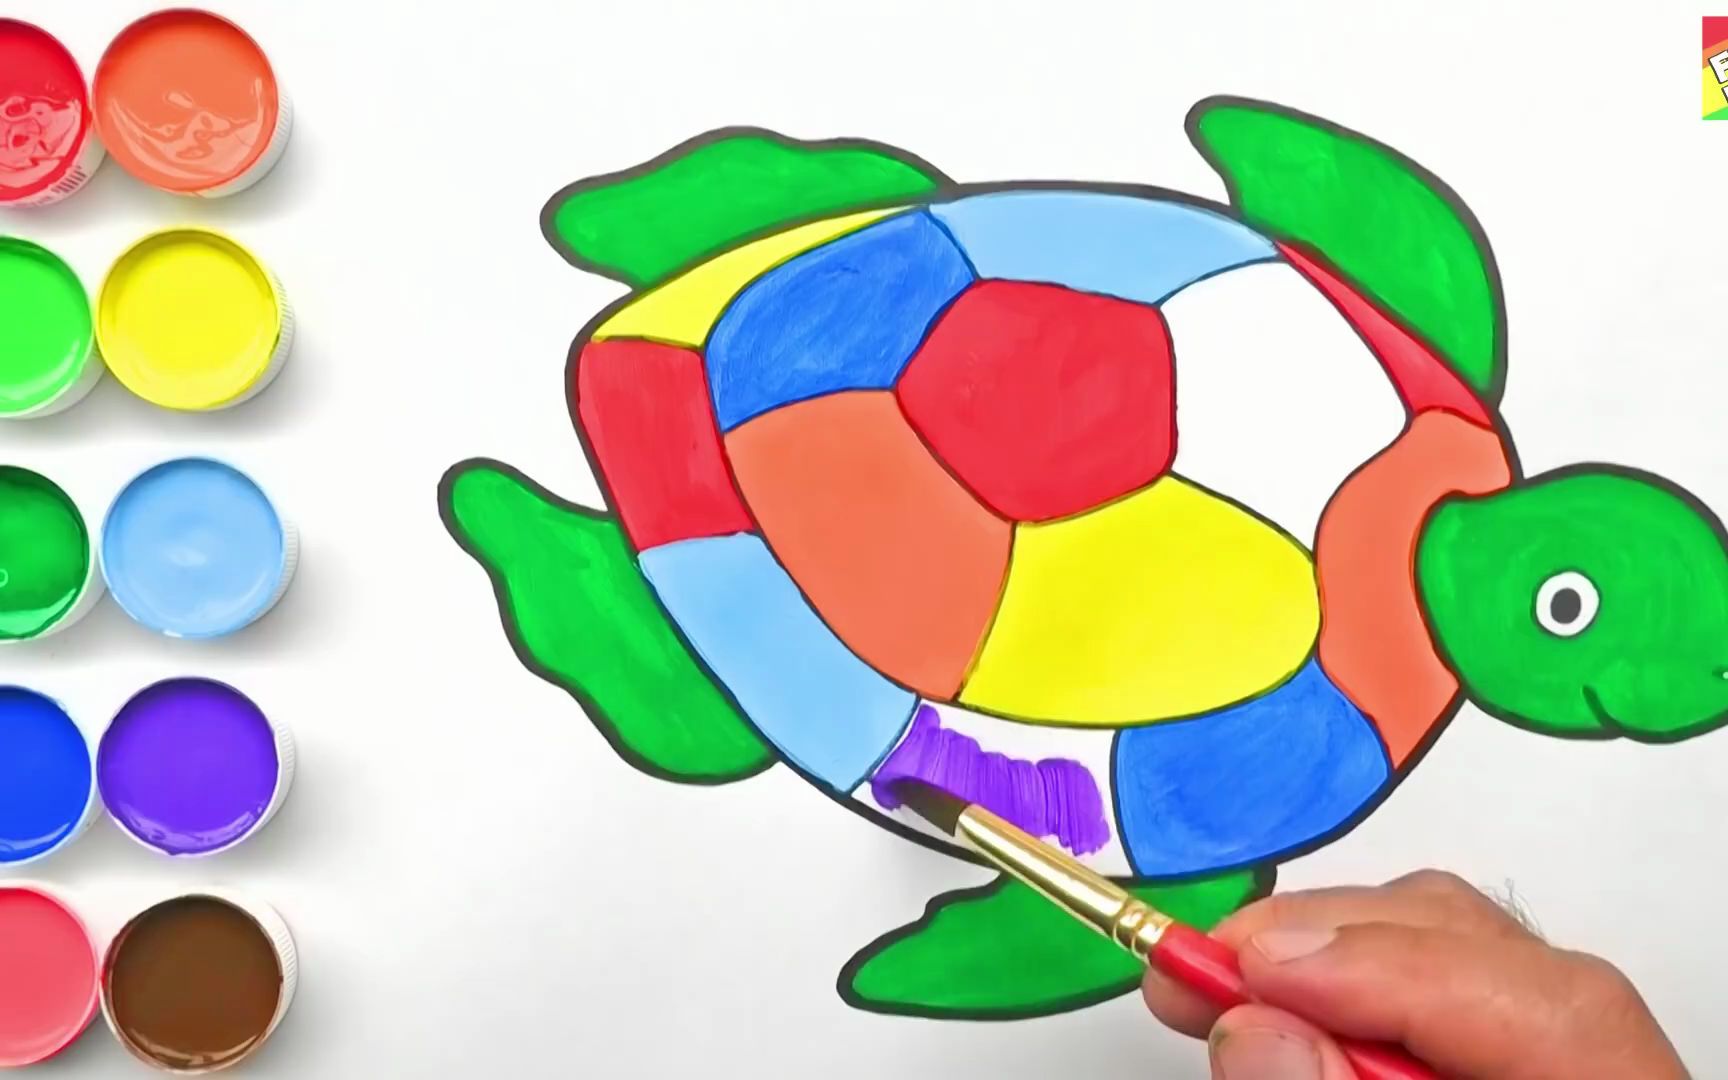 【简笔水彩画】教你画乌龟然后上色~超级简单的简笔画,一看就会!